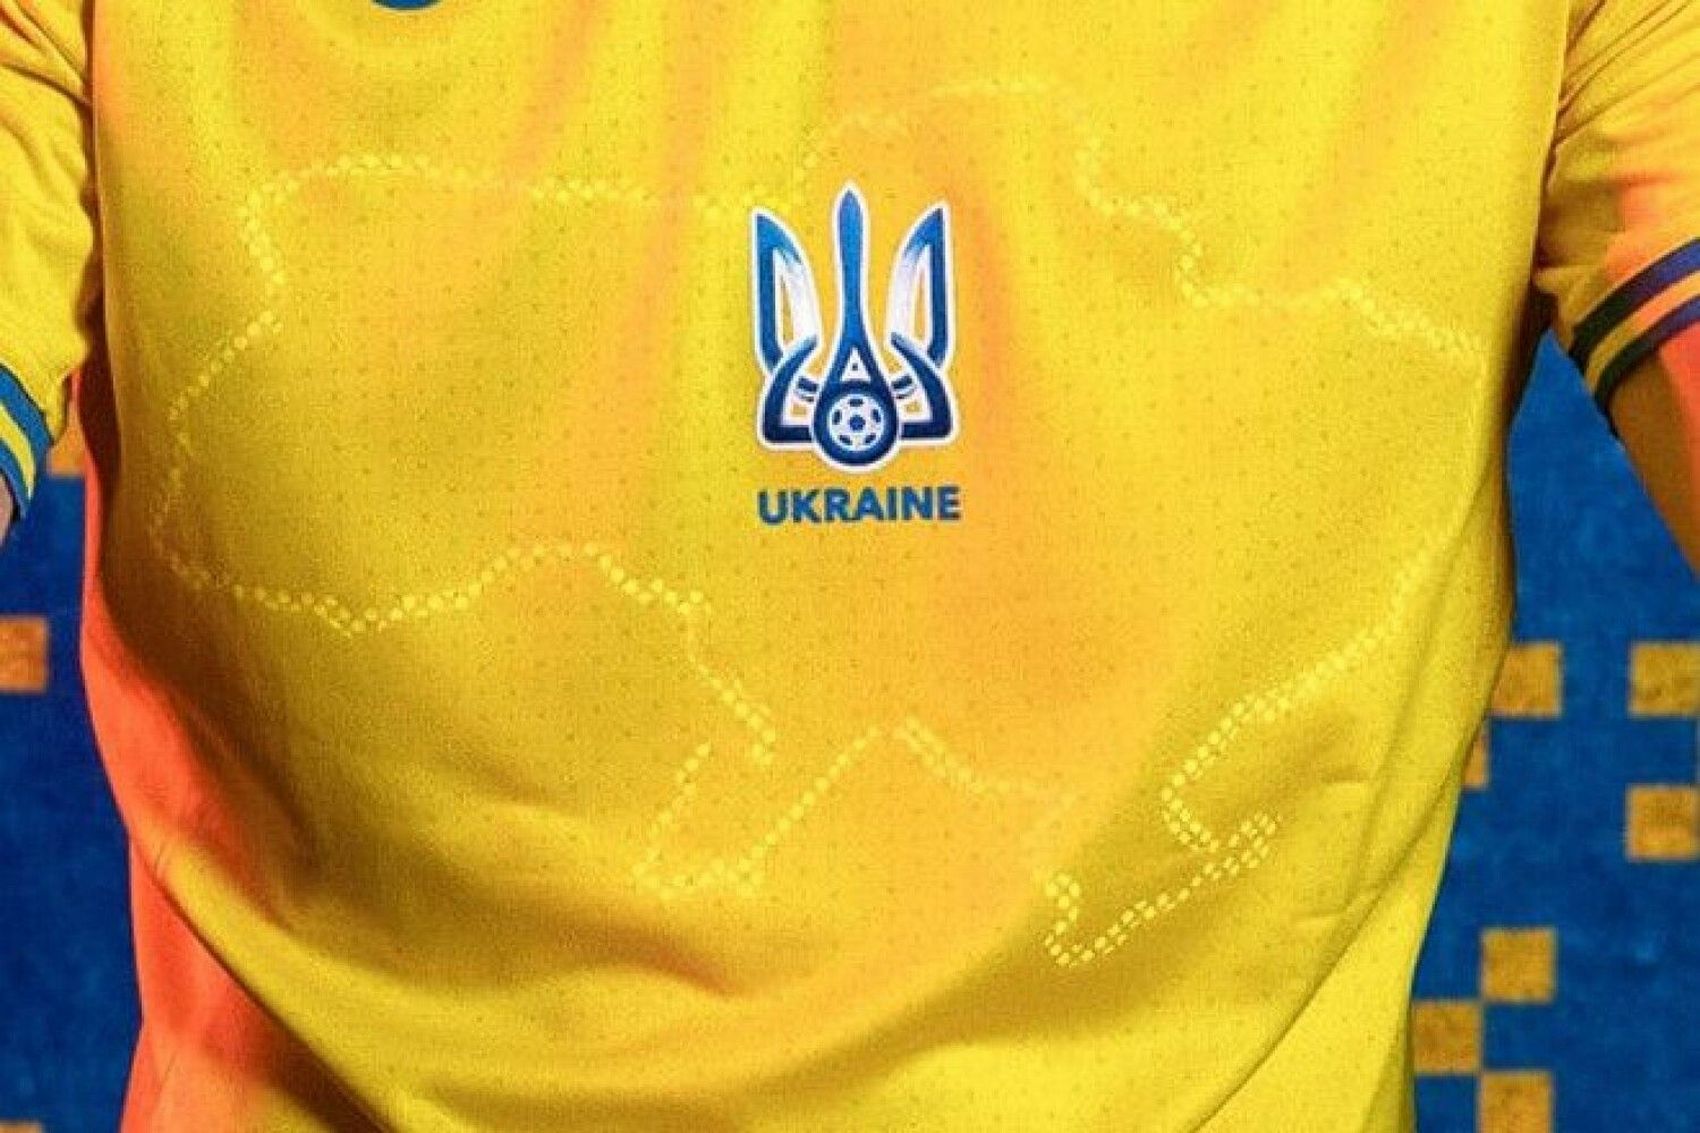 Британская телеведущая сравнила карту на футболке украинской сборной с грязным пятном